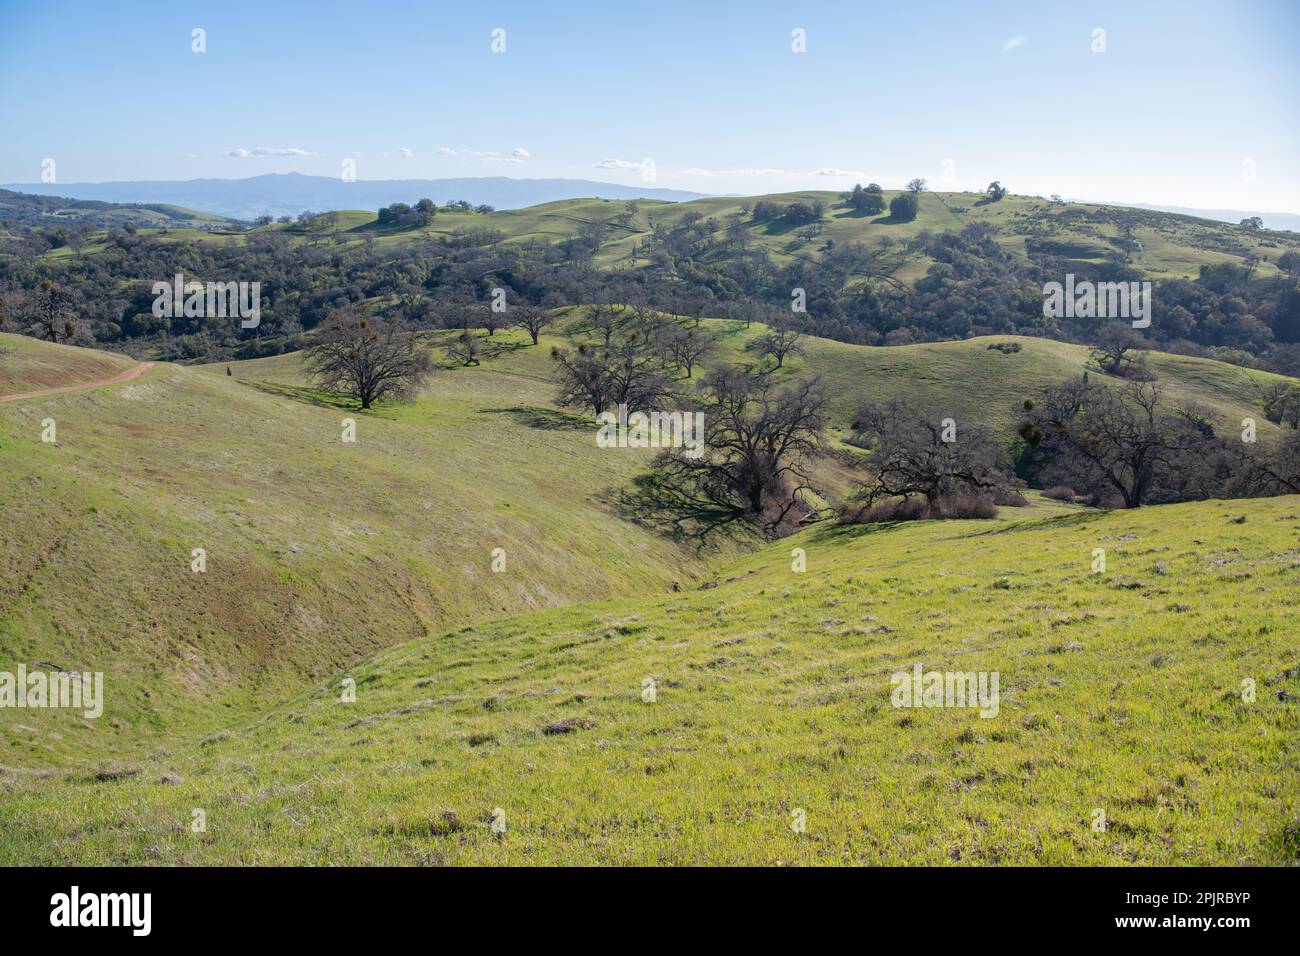 Die Landschaft und die sanften Hügel der kalifornischen Landschaft, die Savanne aus Eichen ist übersät mit Eichen. Stockfoto